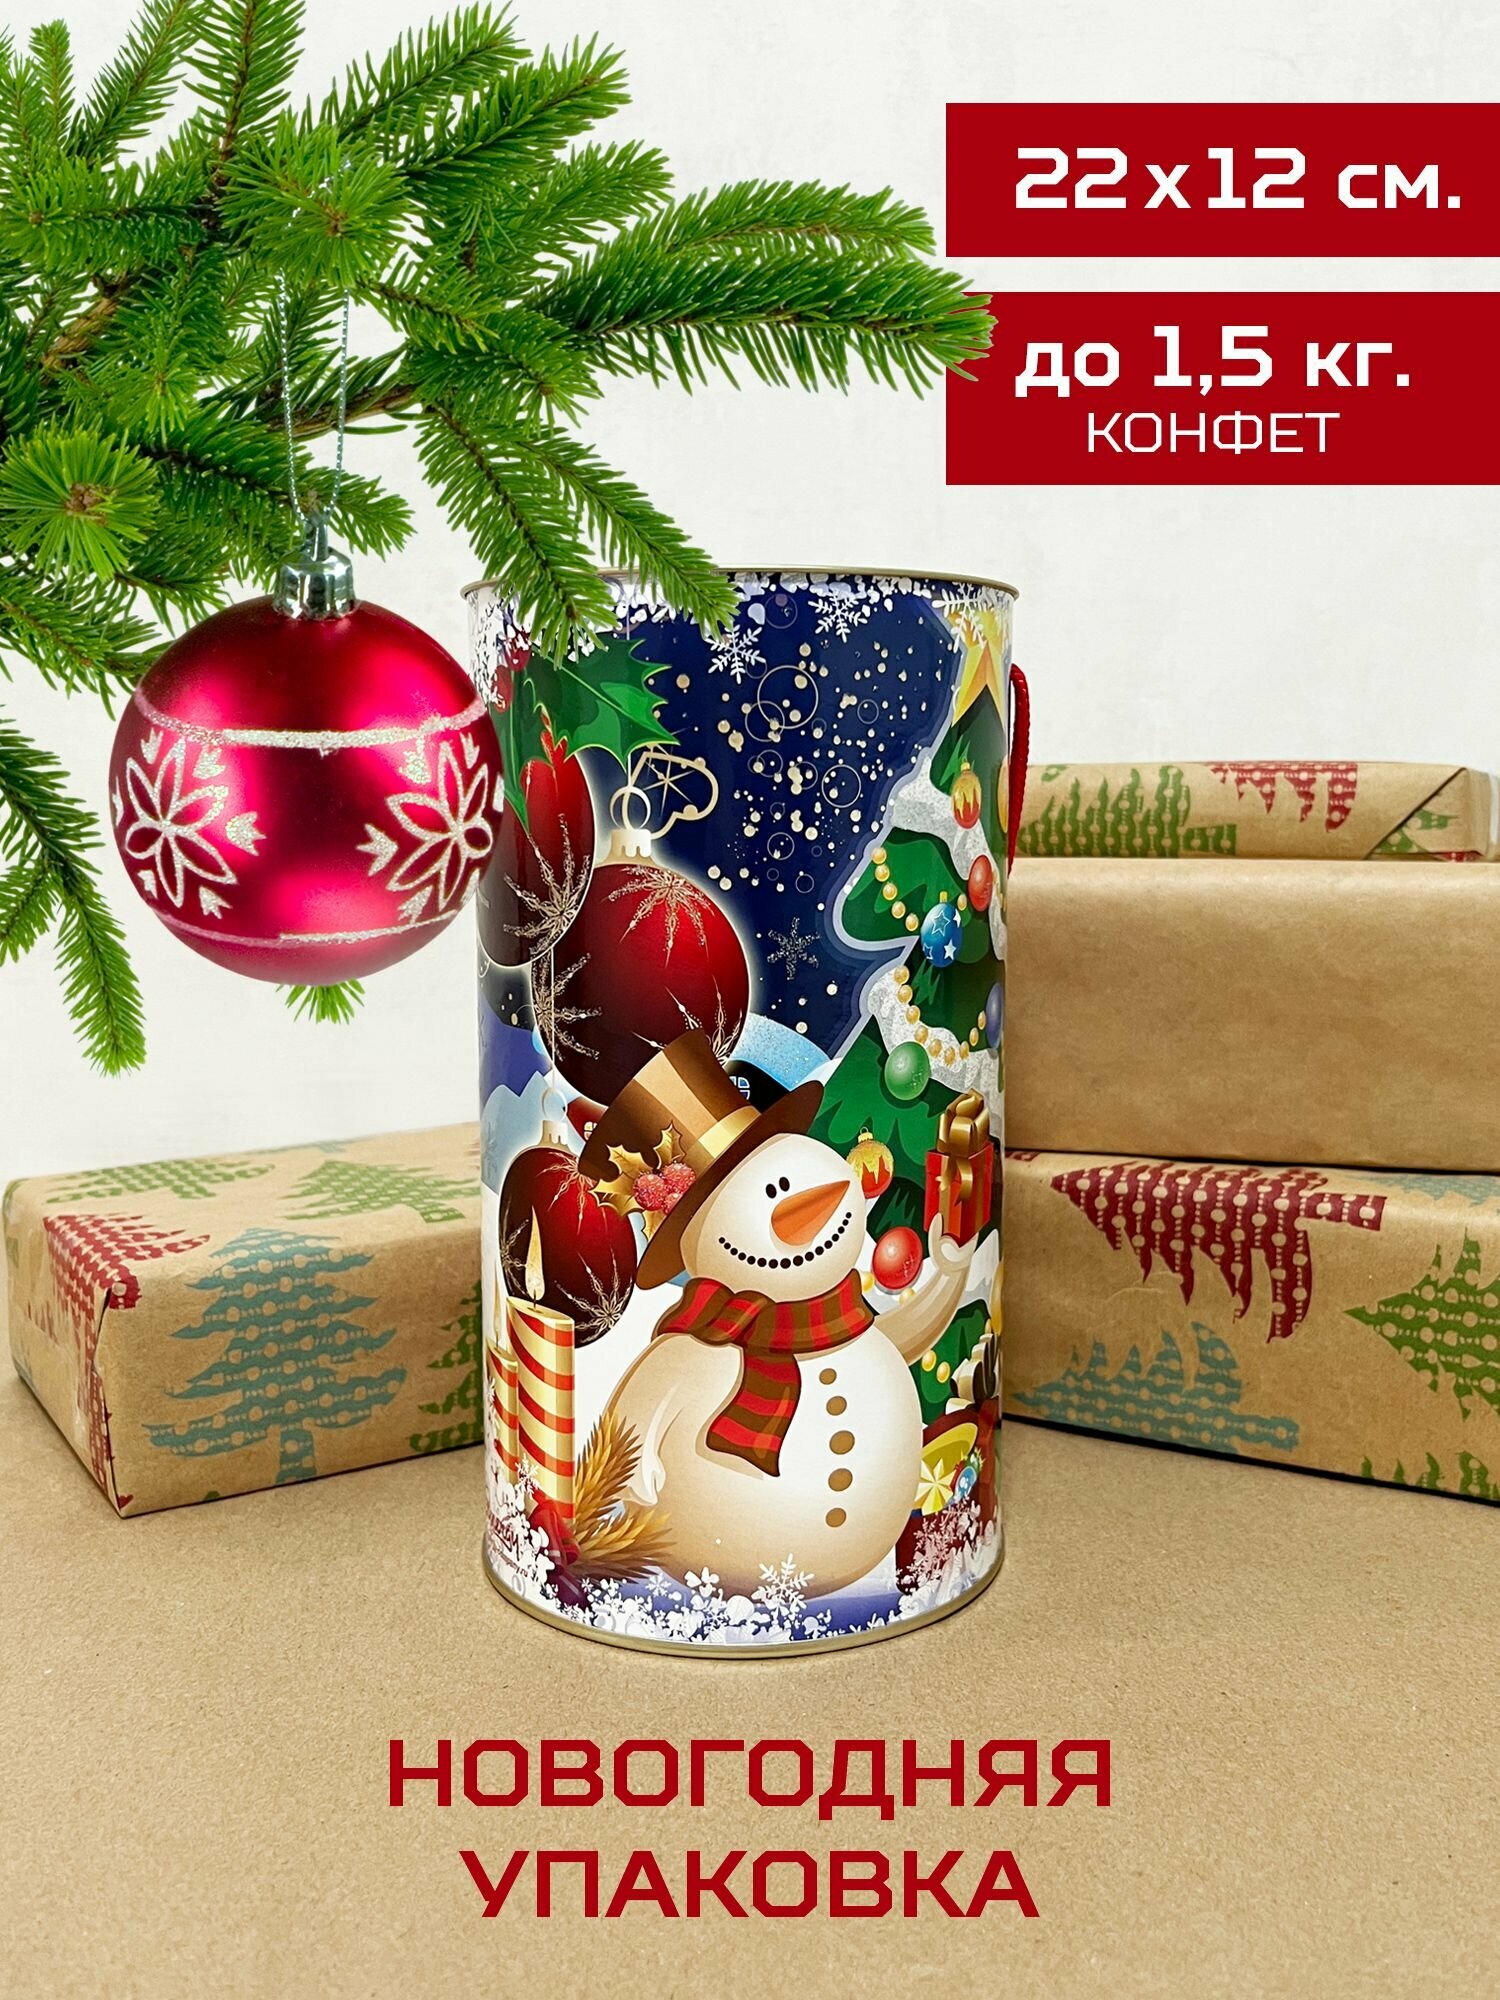 Тубус новогодний "Веселый снеговик", упаковка подарочная, для конфет и подарков, новогодняя упаковка